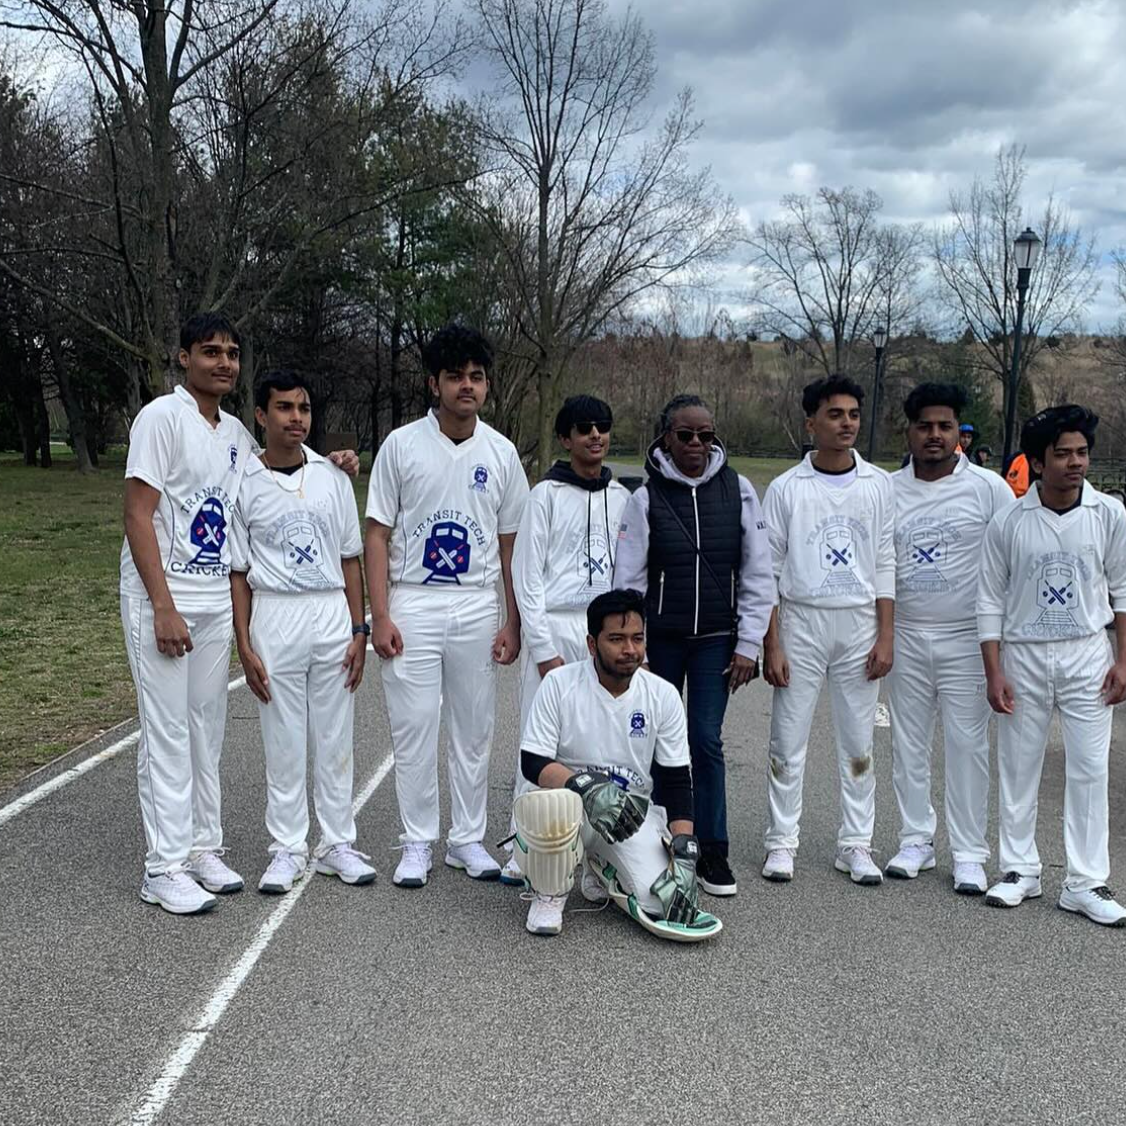 cricket team posing